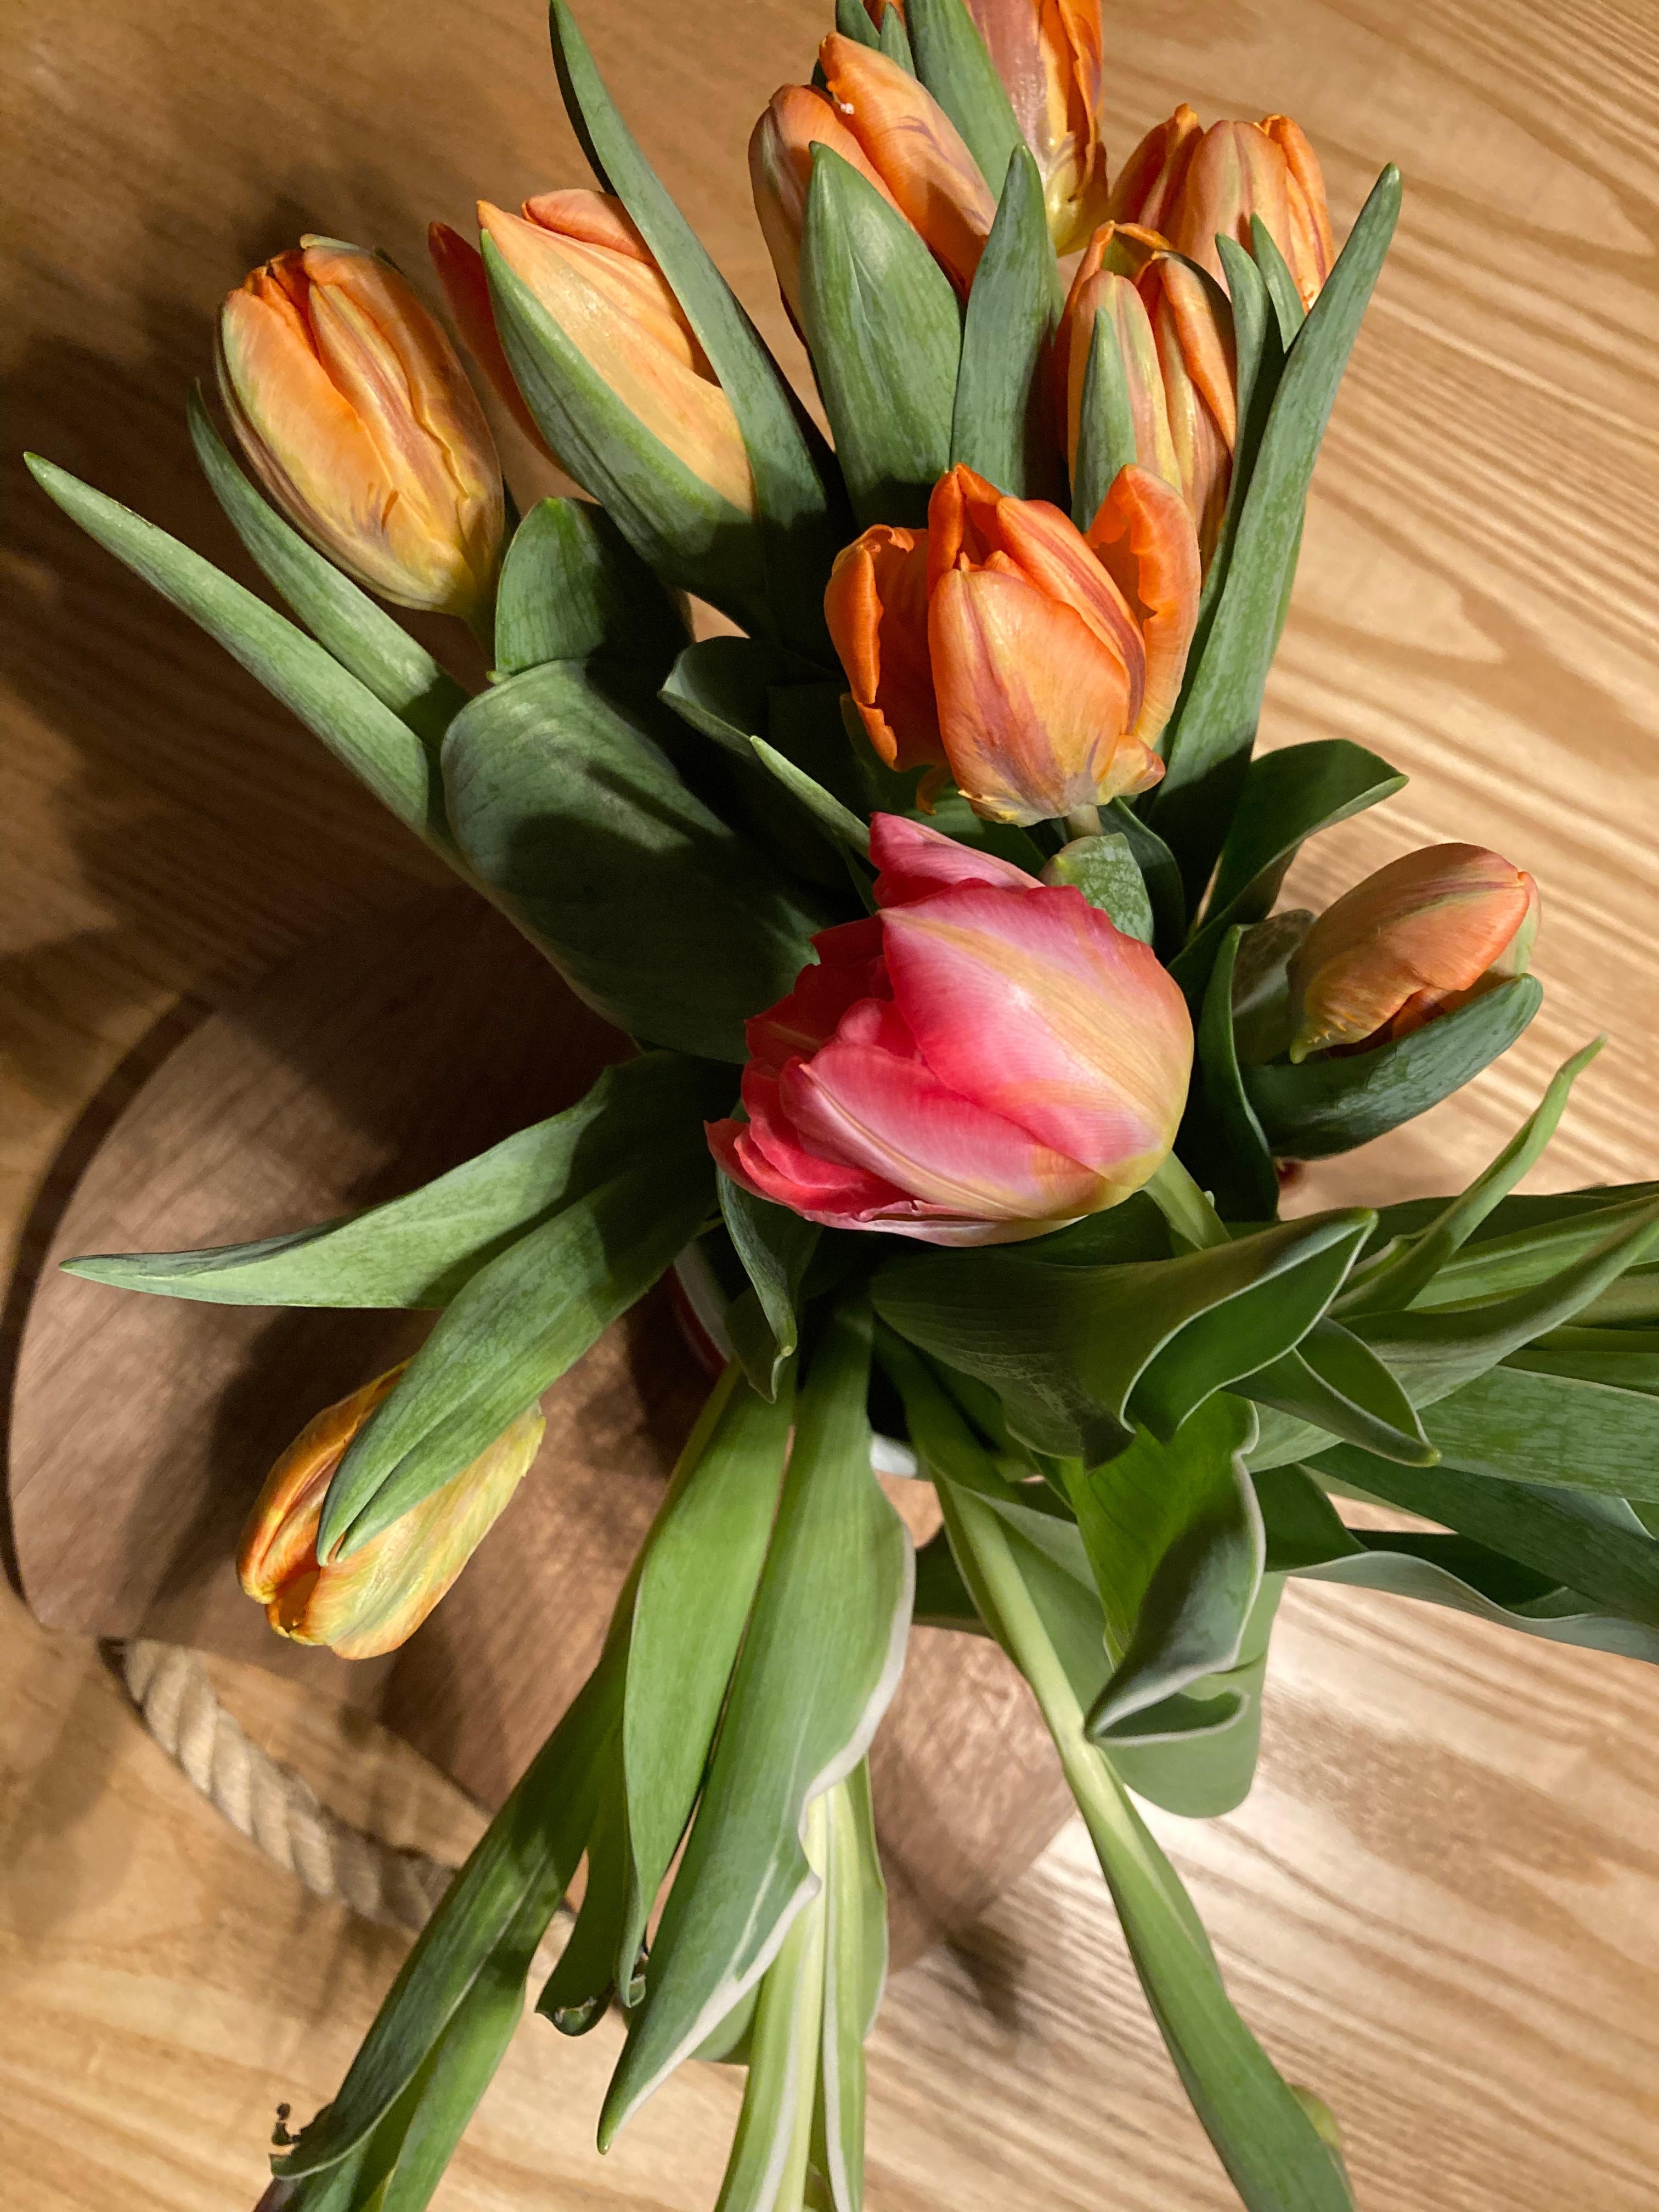 Tulpen, meine Lieblinge. In den schönsten Farben. #tulpen #blumen #holztisch #frischesgrün #orange #farbtupfer